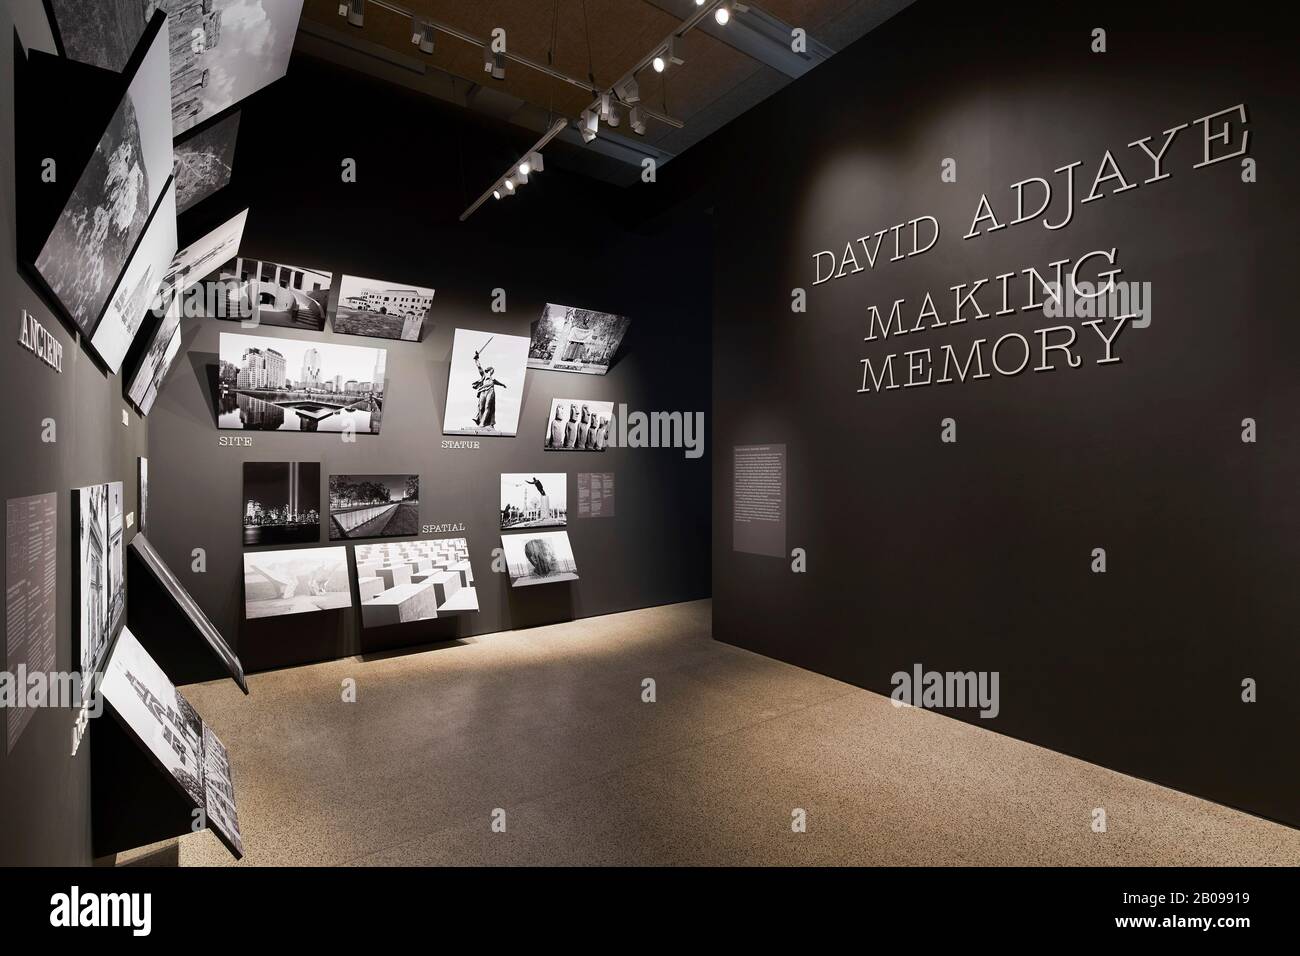 Salle d'exposition. Making Memory Exhibition, Londres, Royaume-Uni. Architecte: Adjaye Associates , 2019. Banque D'Images